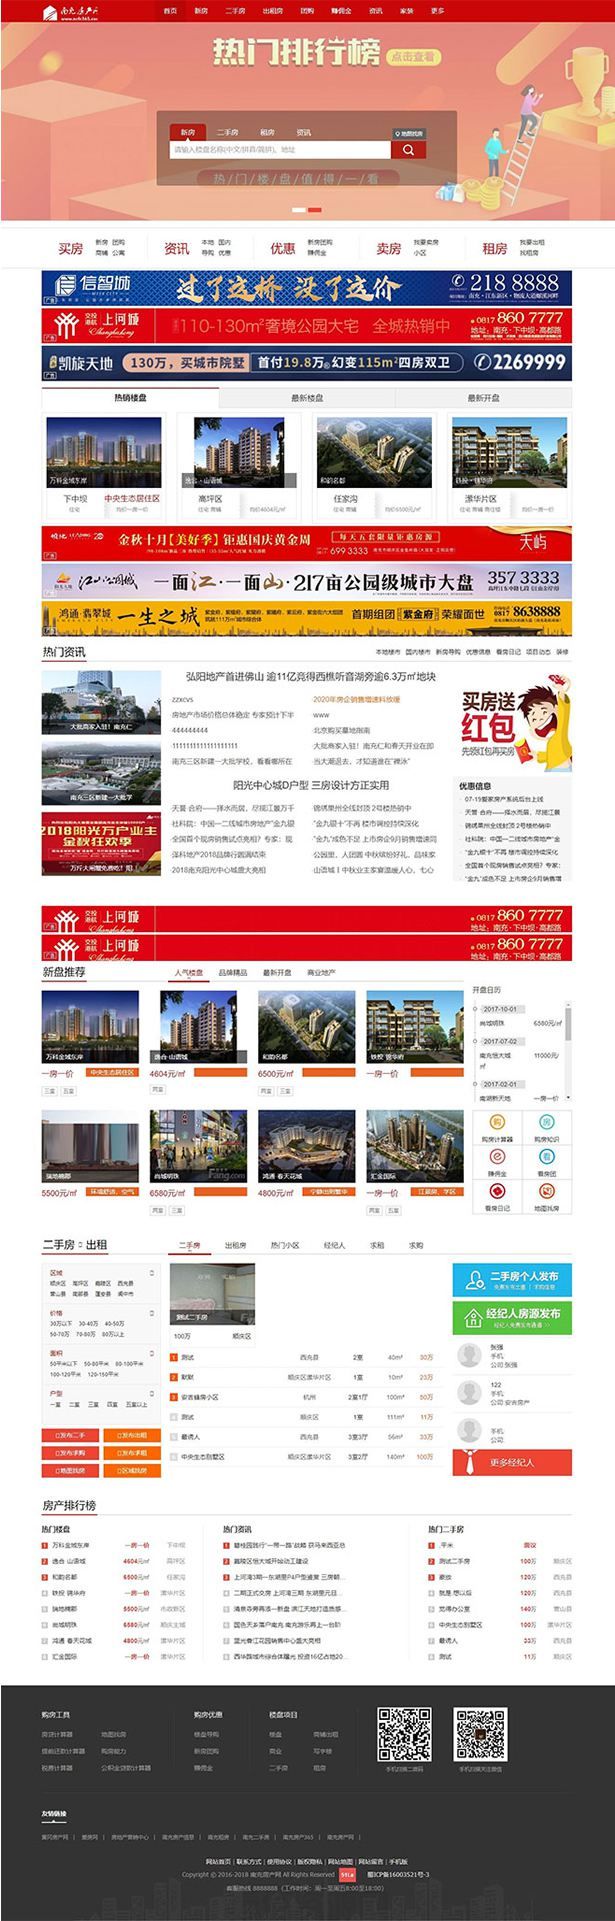 【站长亲测】爱家Aijiacms红色高端大型房产门户系统V9网站源码 带手机版(图1)